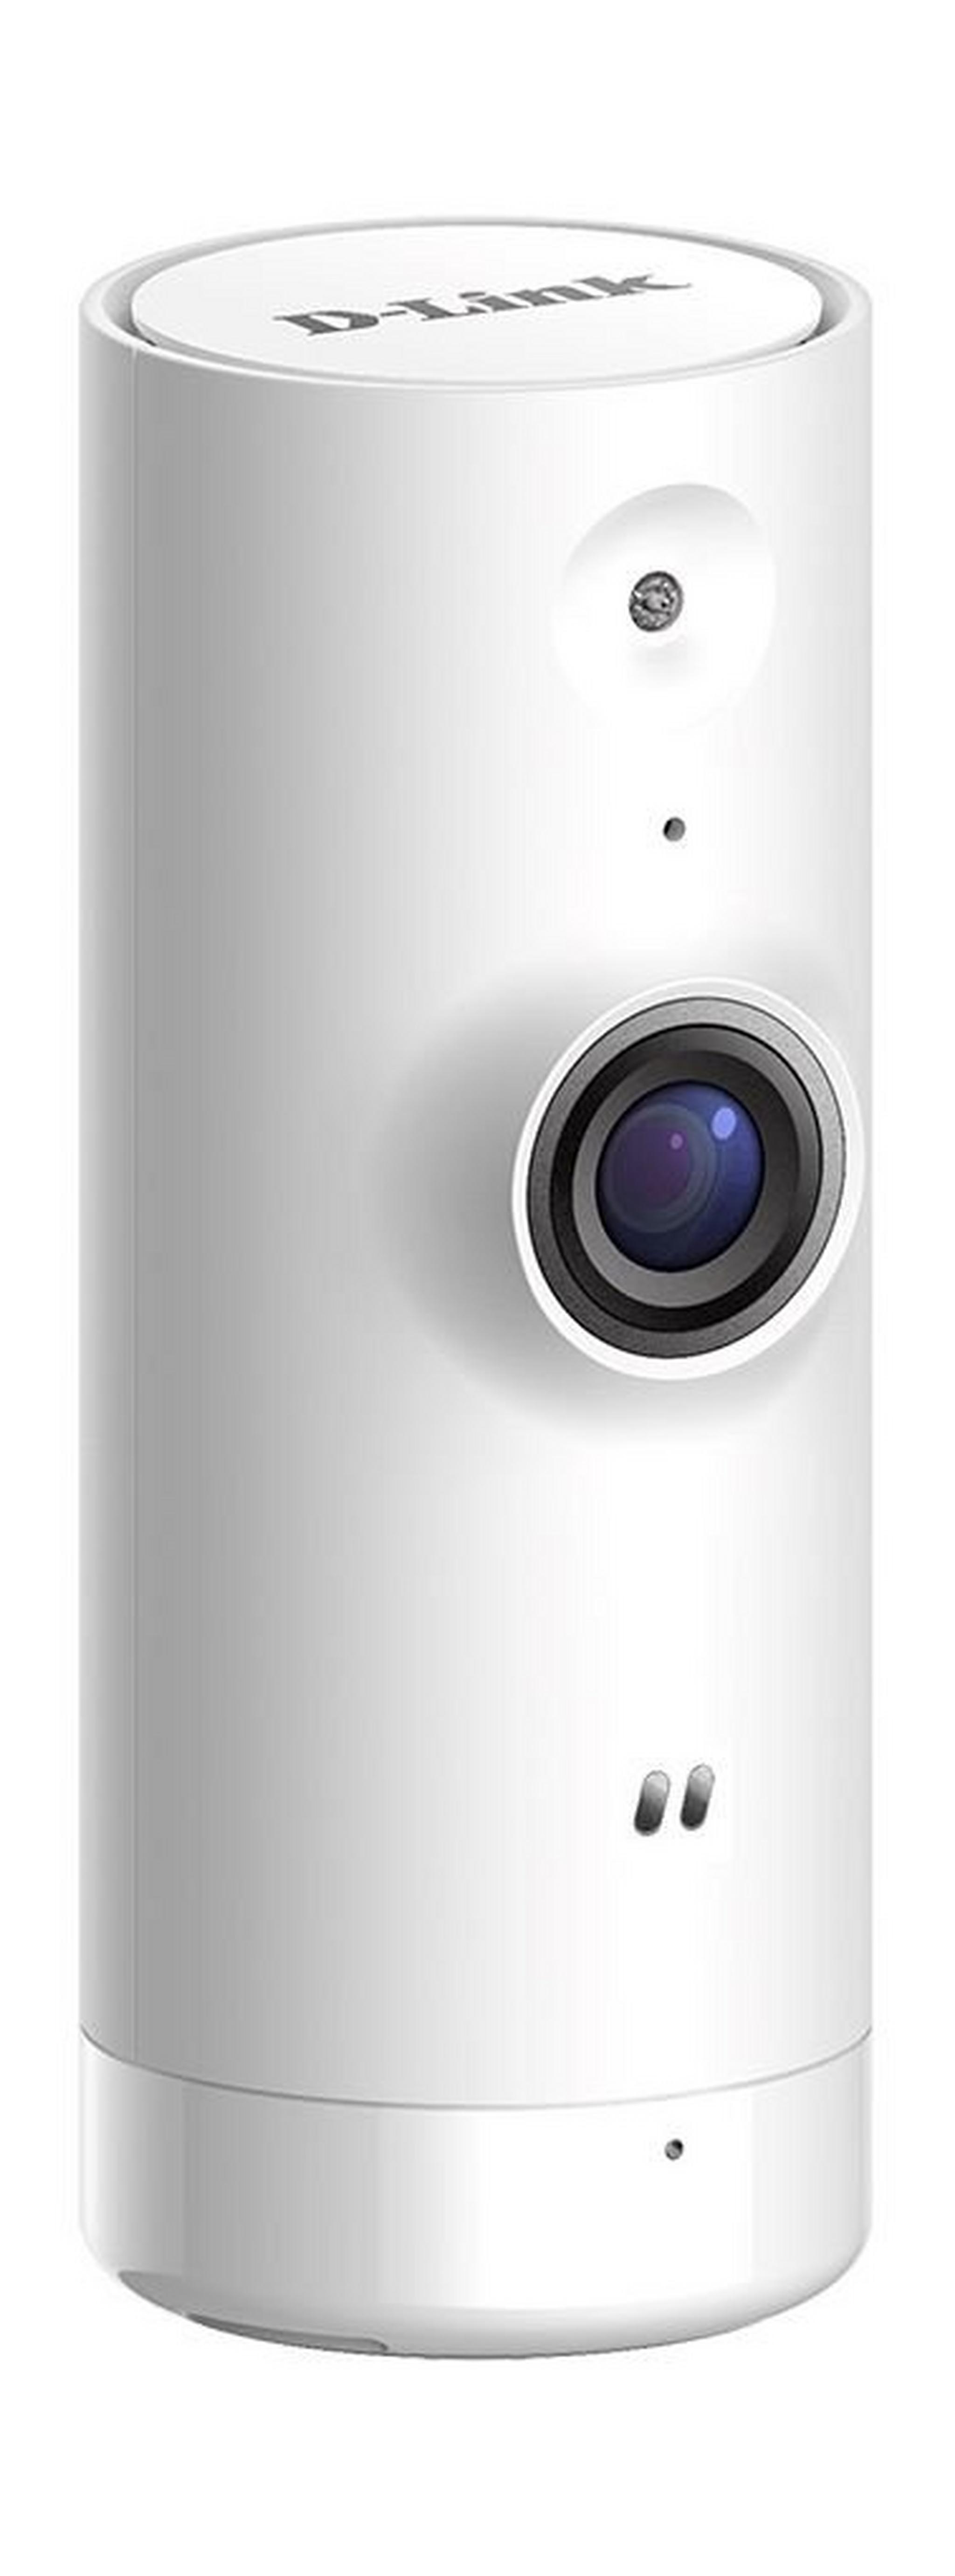 كاميرا مراقية دي لينك - عالية الوضوح - واي فاي - (DCS-8000LH)